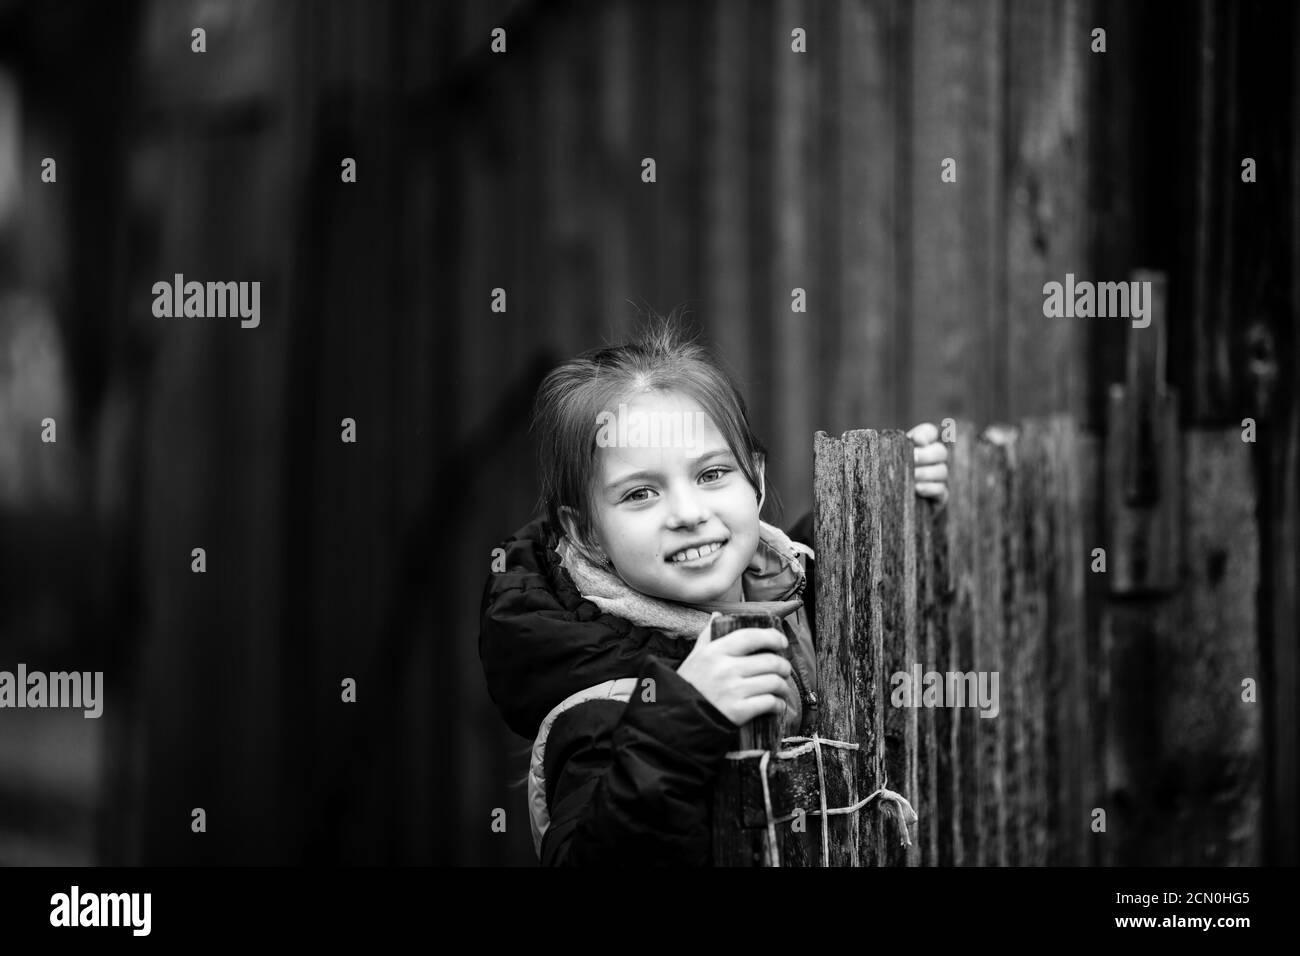 Porträt eines kleinen Mädchens hinter einem Holzzaun in einem Dorf. Schwarzweiß-Fotografie. Stockfoto